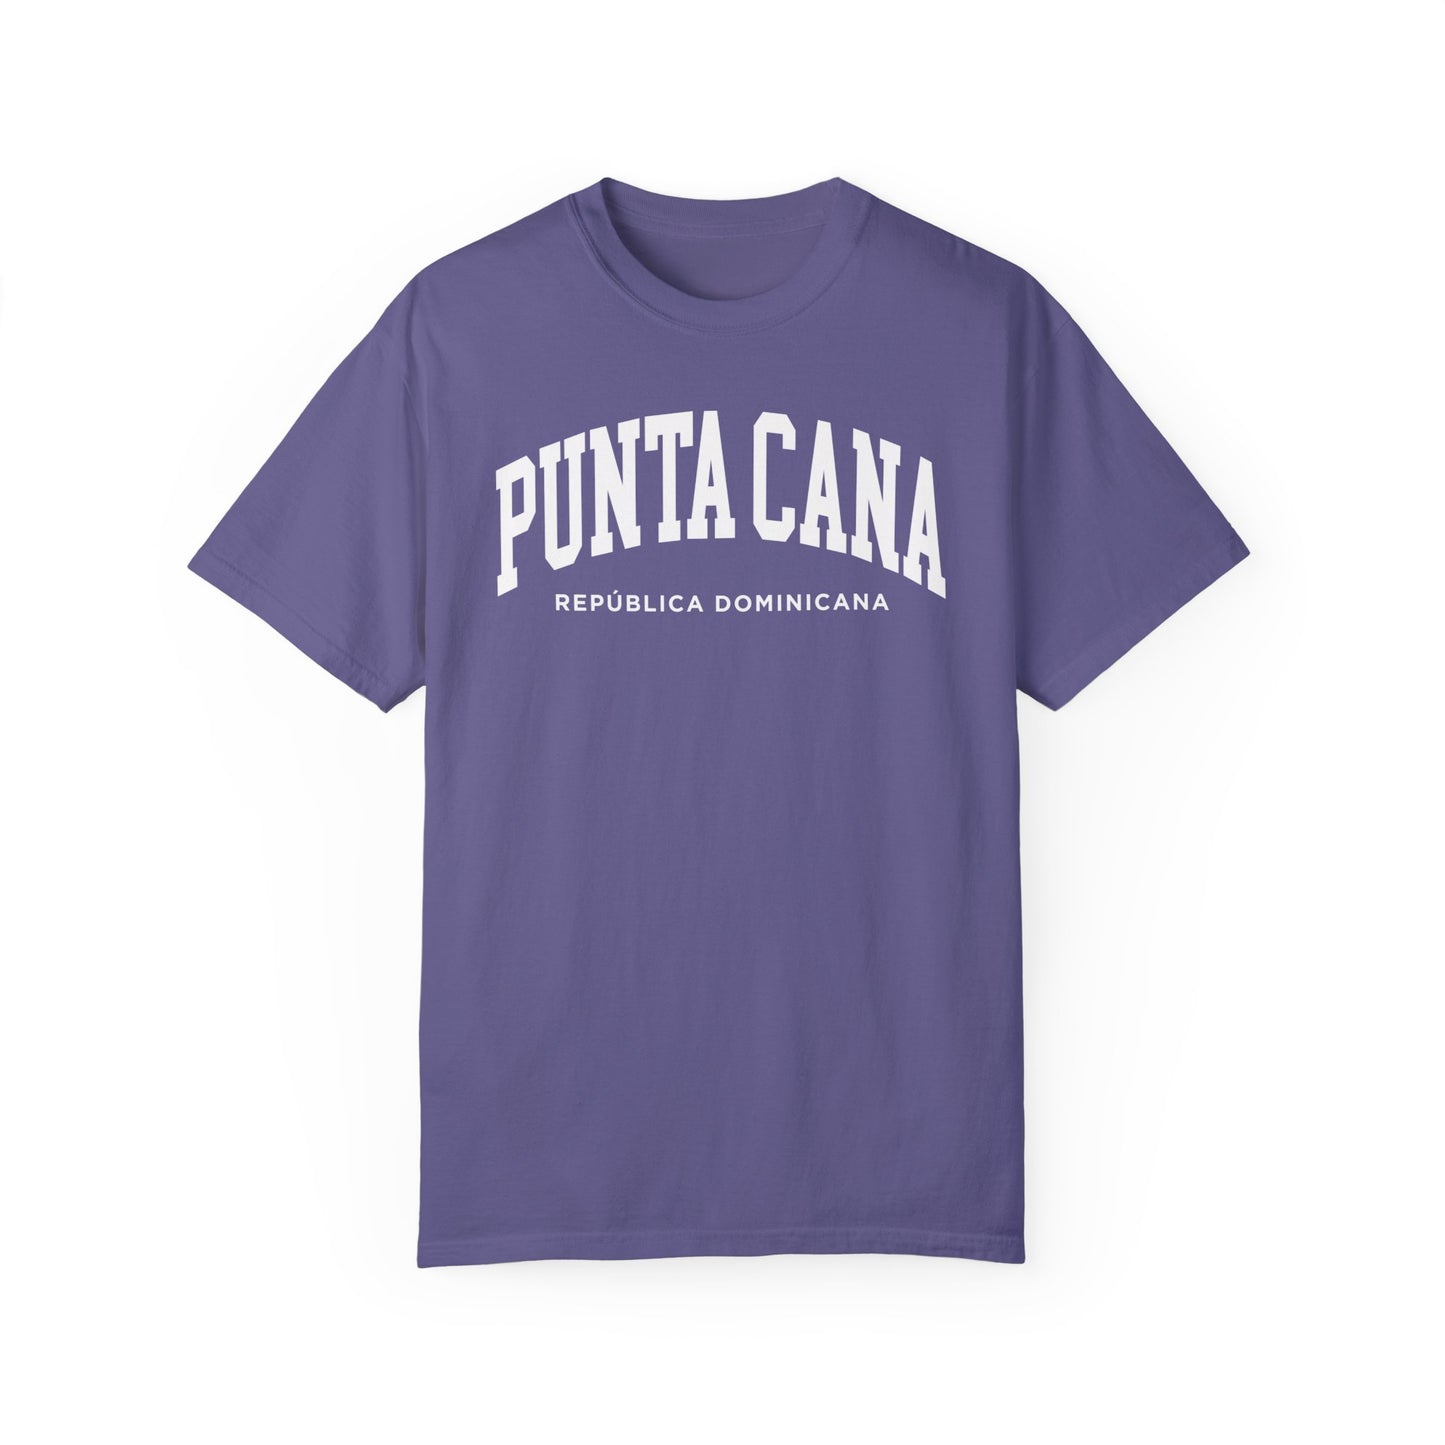 Punta Cana Dominican Republic Comfort Colors® Tee